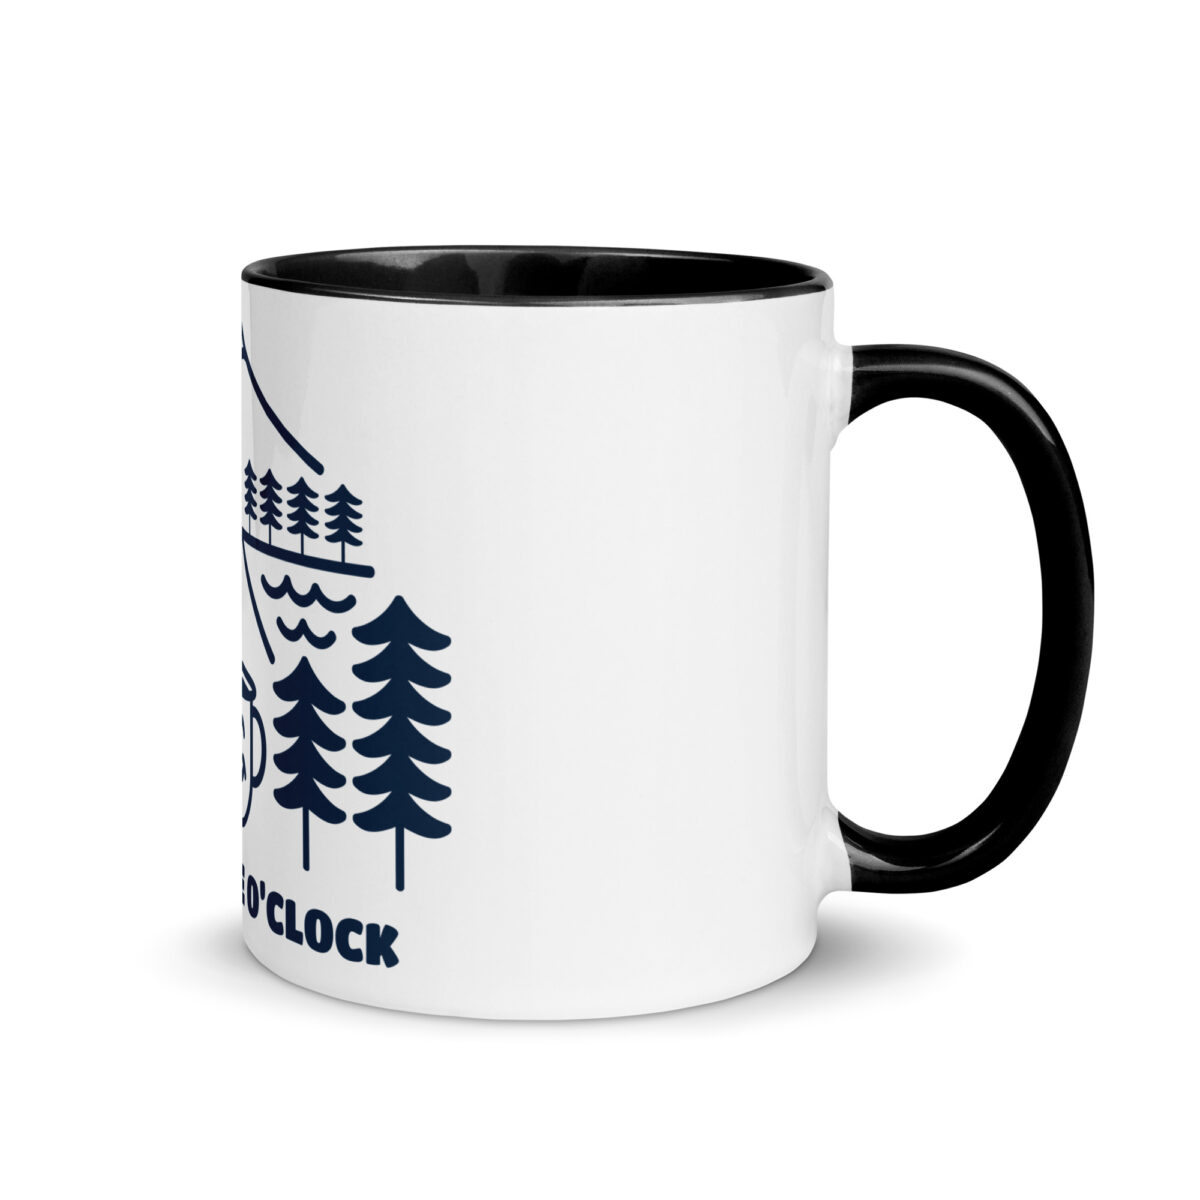 white ceramic mug with color inside black 11oz right 643a8c7be151f